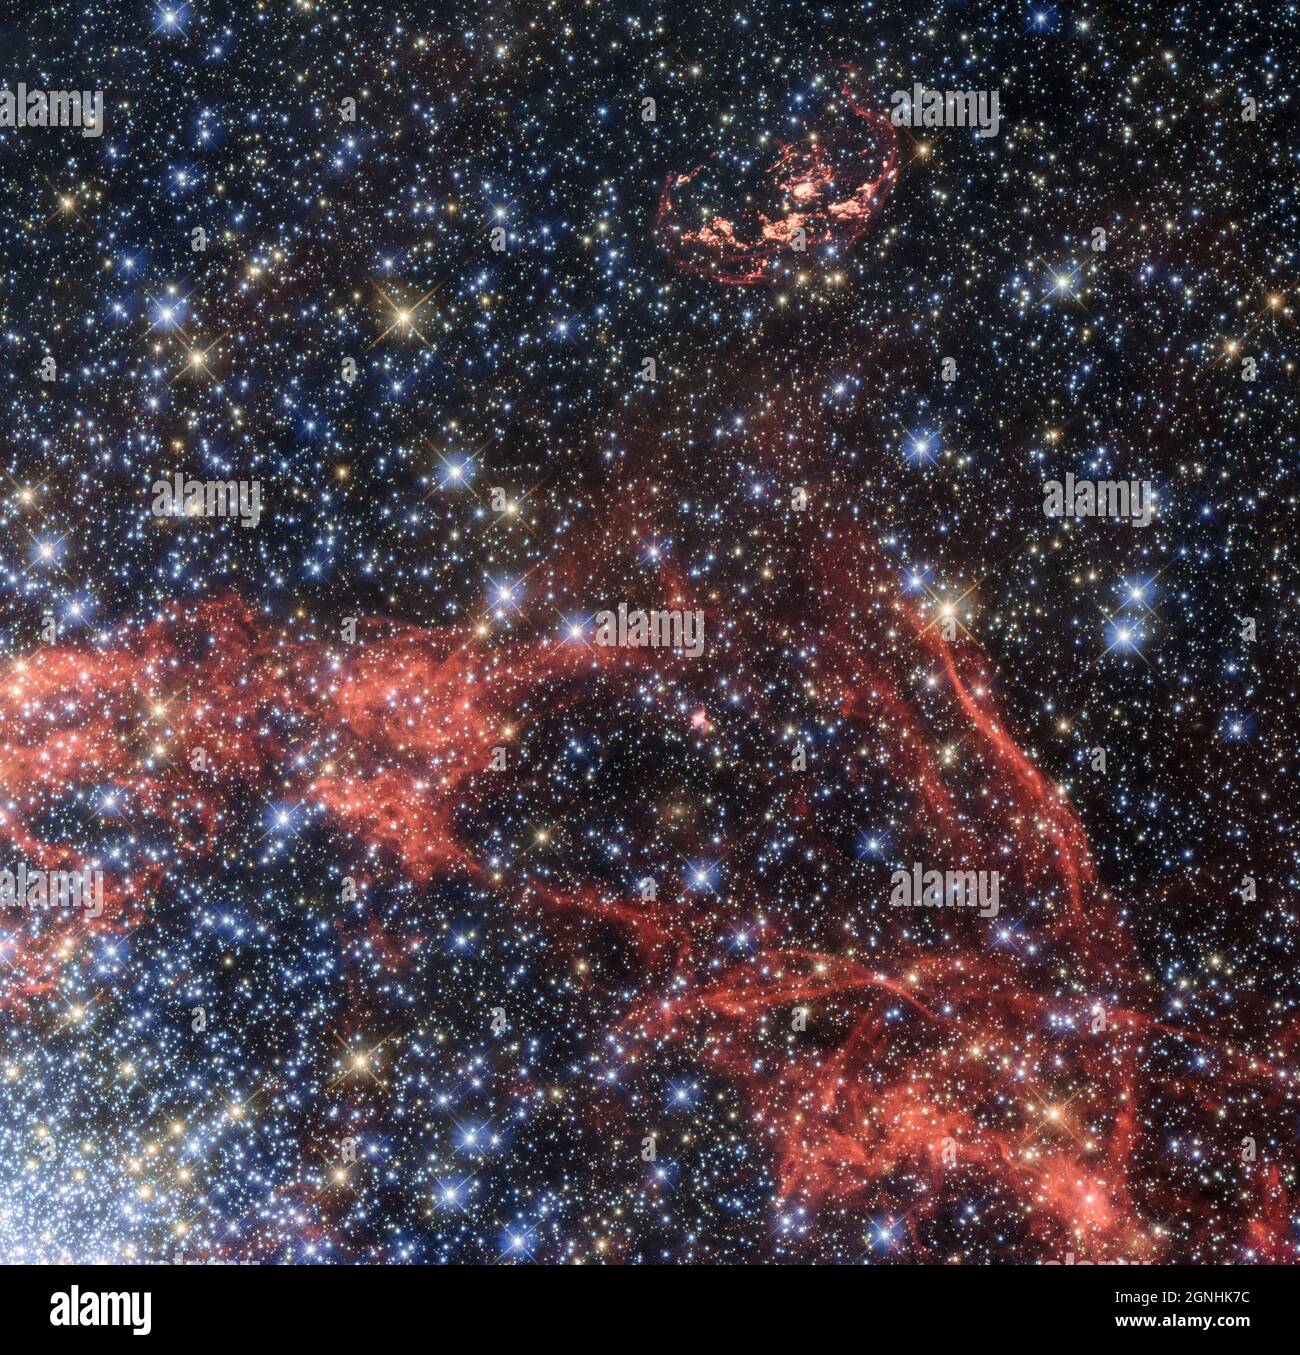 Questa immagine mostra il residuo di supernova SNR 0509-68.7, noto anche come N103B che era una supernova di tipo Ia, situata nella grande nuvola Magellanica. . Fonte immagine NASA/ESA Hubble Space Telescope Foto Stock